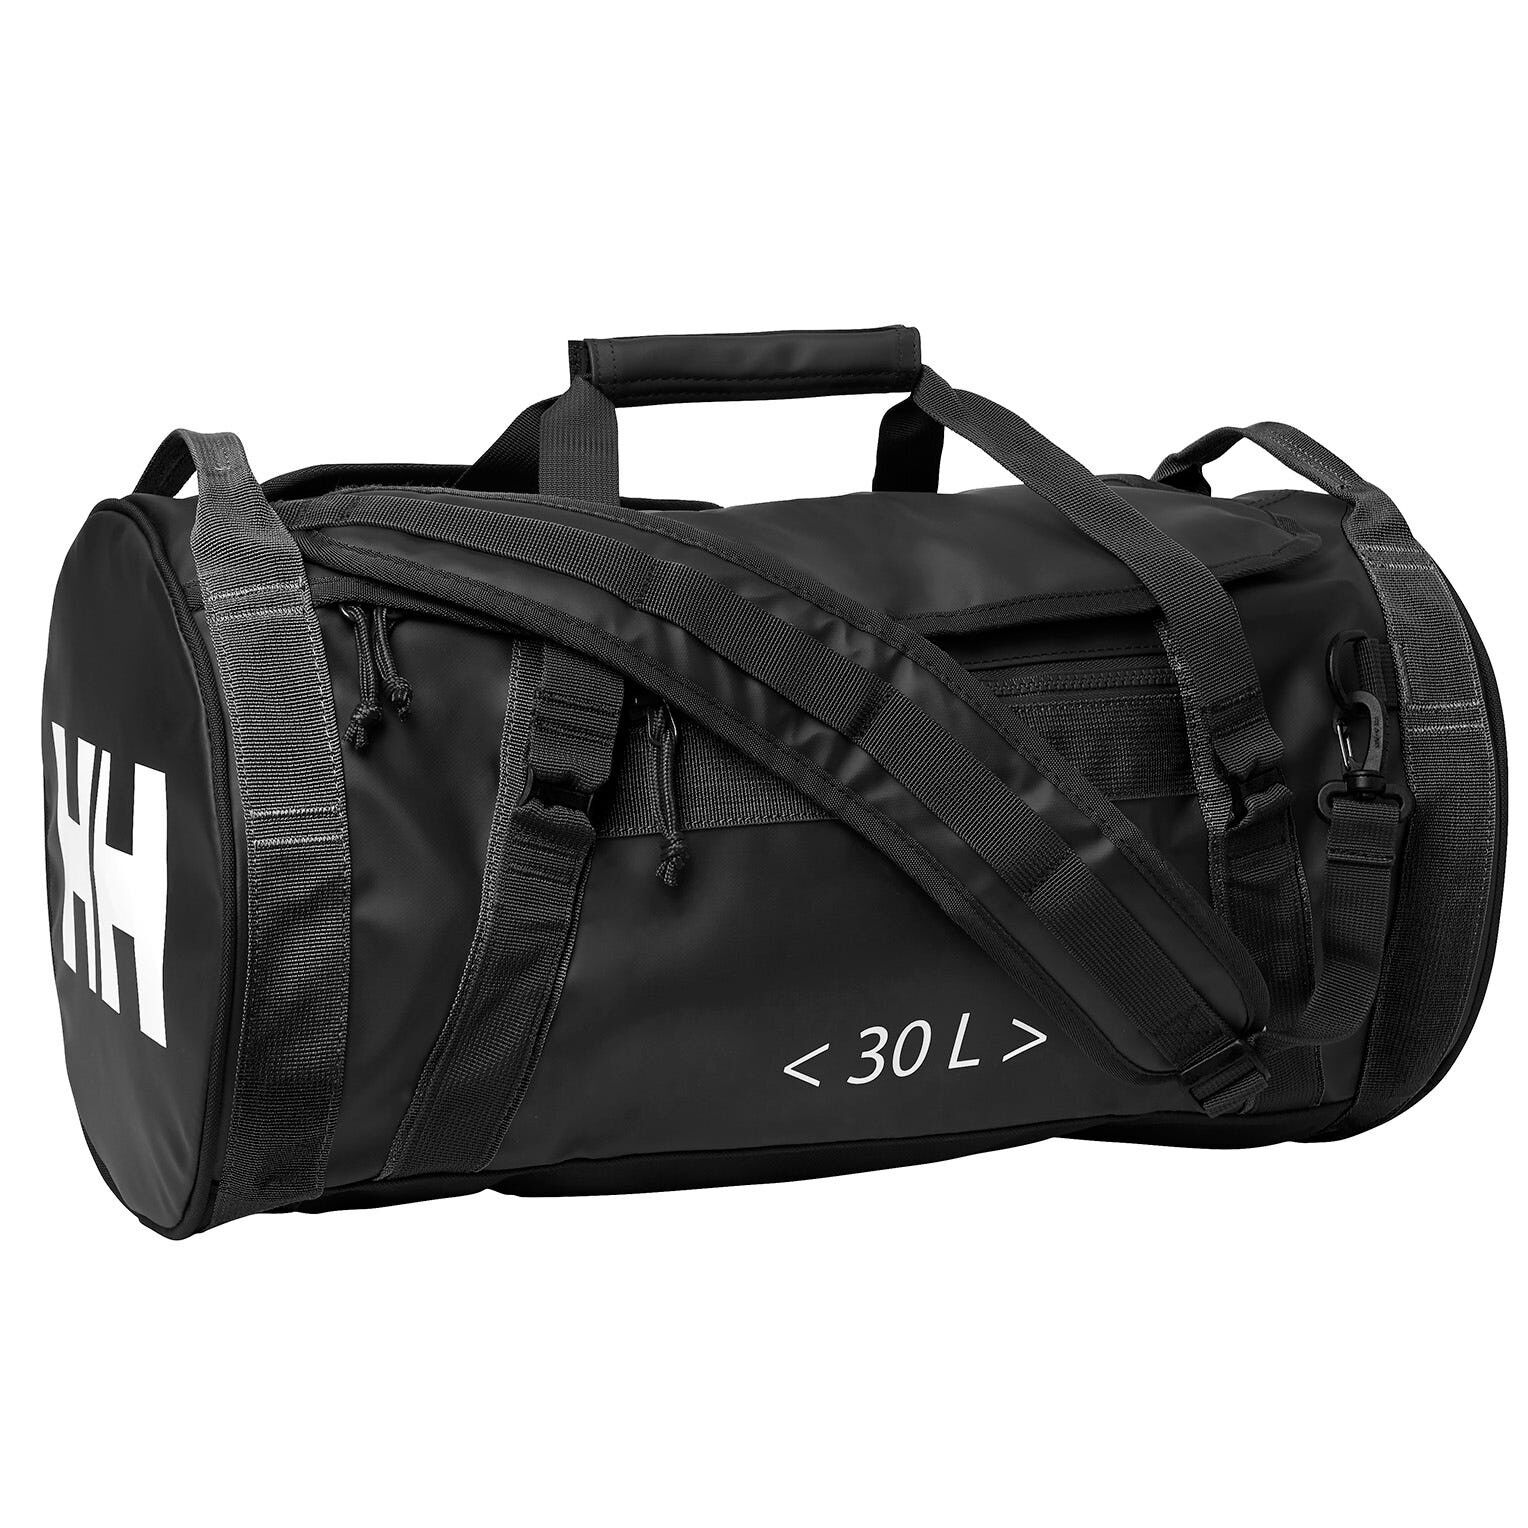 Helly Hansen HH Duffel Bag 2 30L - Bolsa de viaje